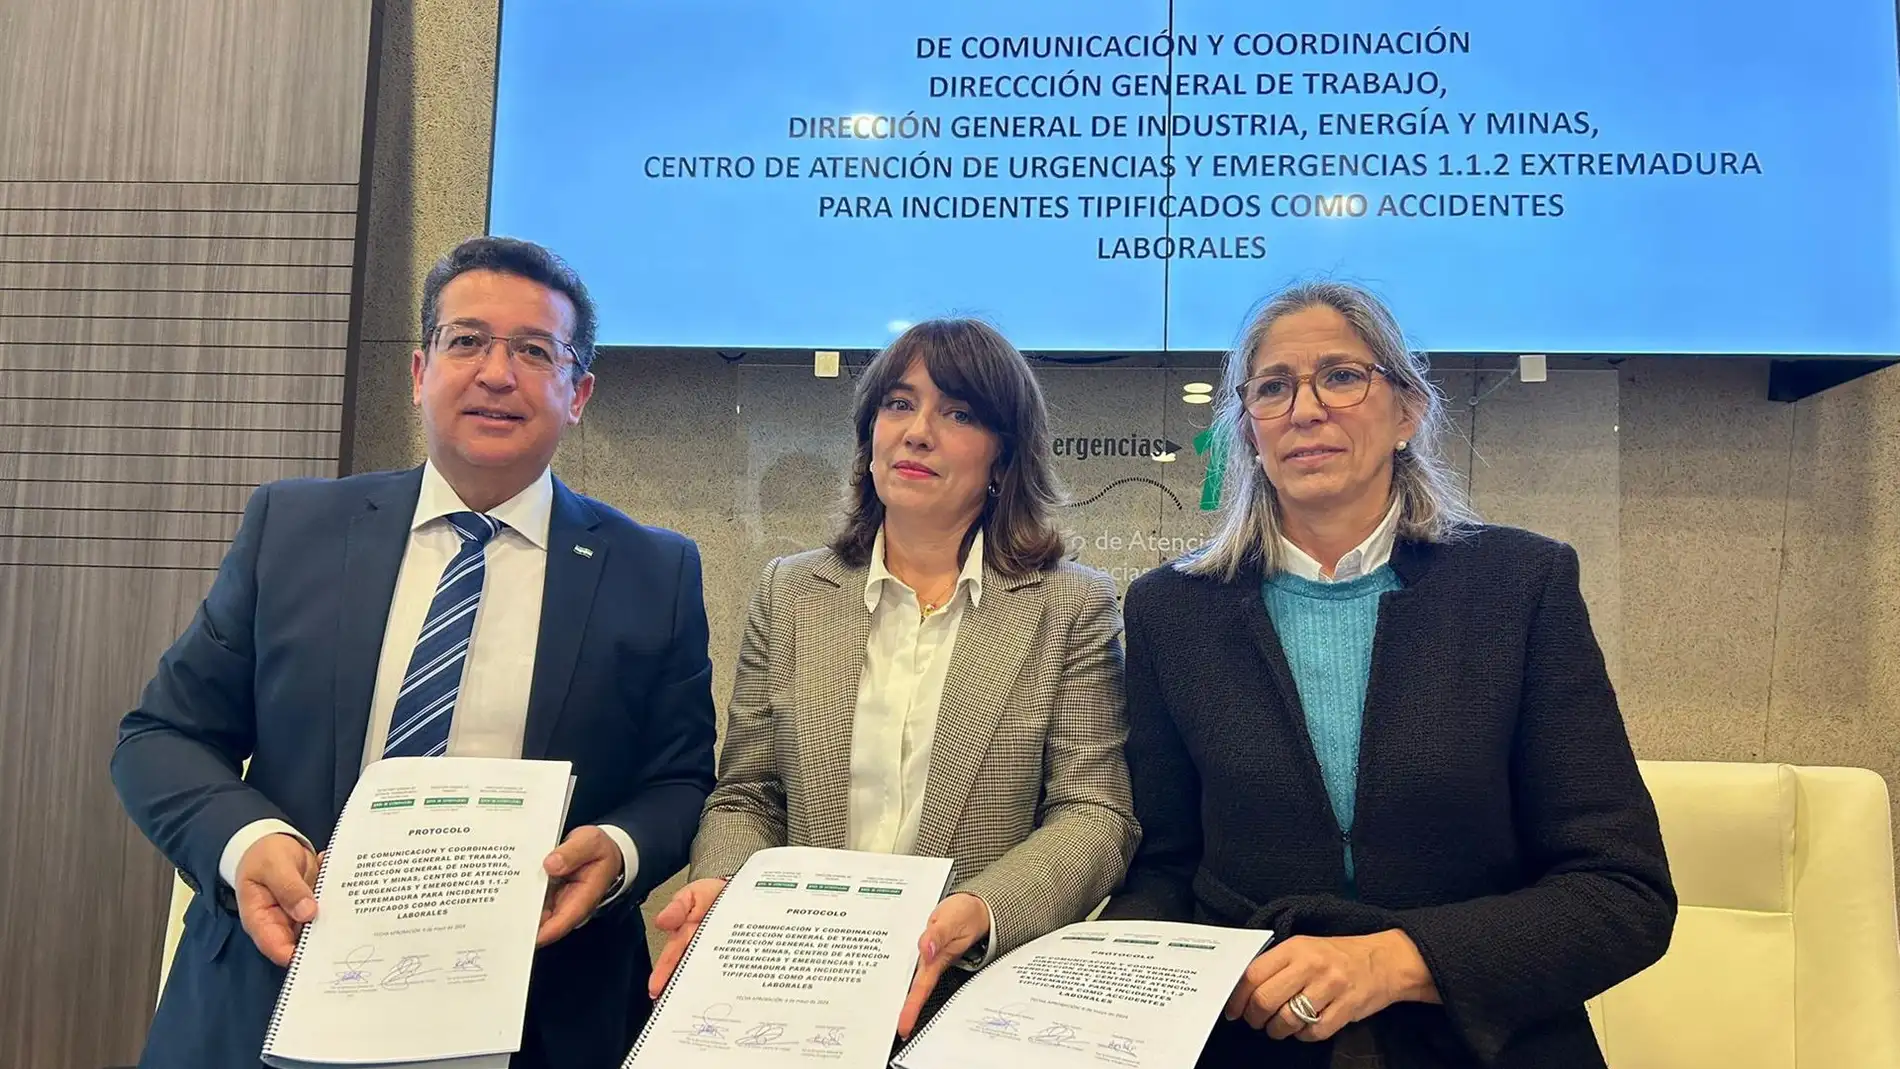 El 112 Extremadura colaborará "estrechamente" en la investigación de accidente laborales gracias a un convenio